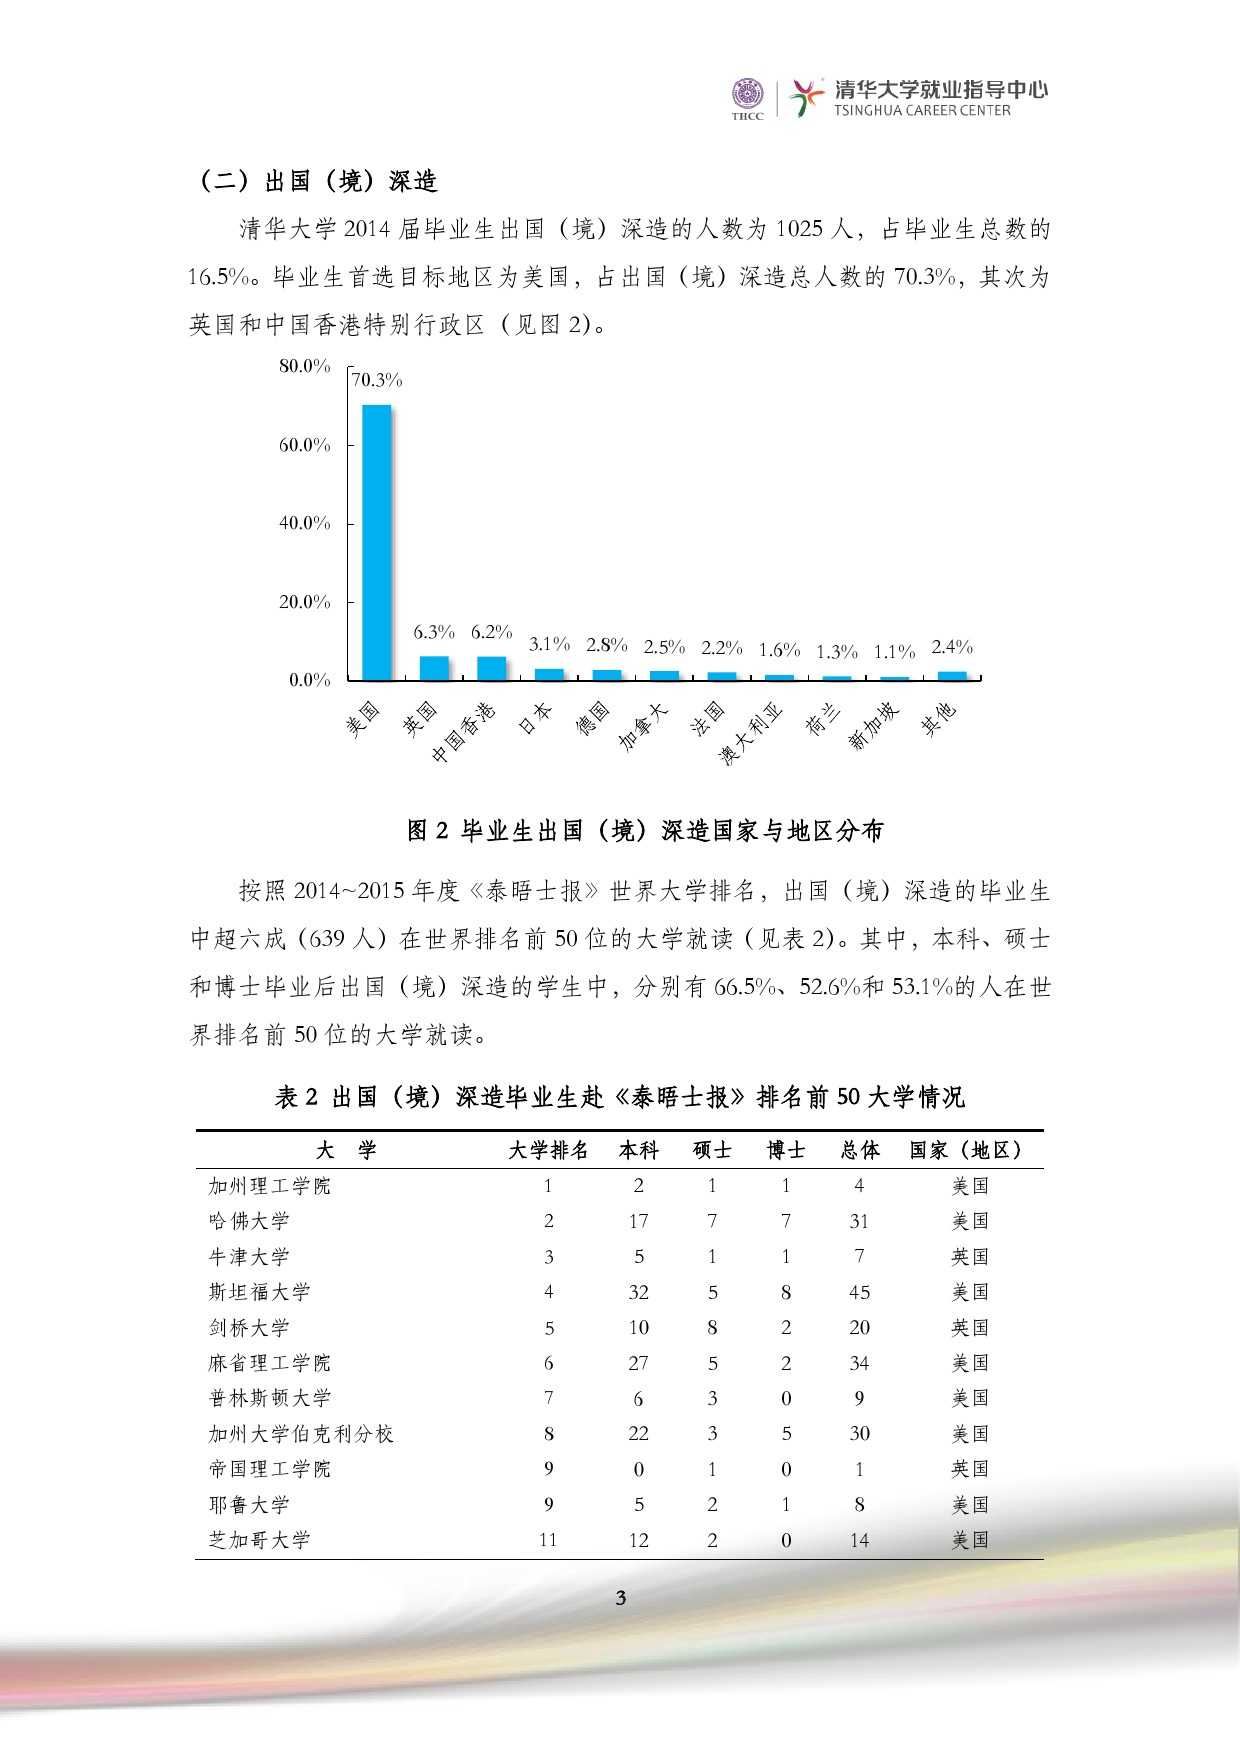 清華大學2014 年畢業生就業質量報告_000005